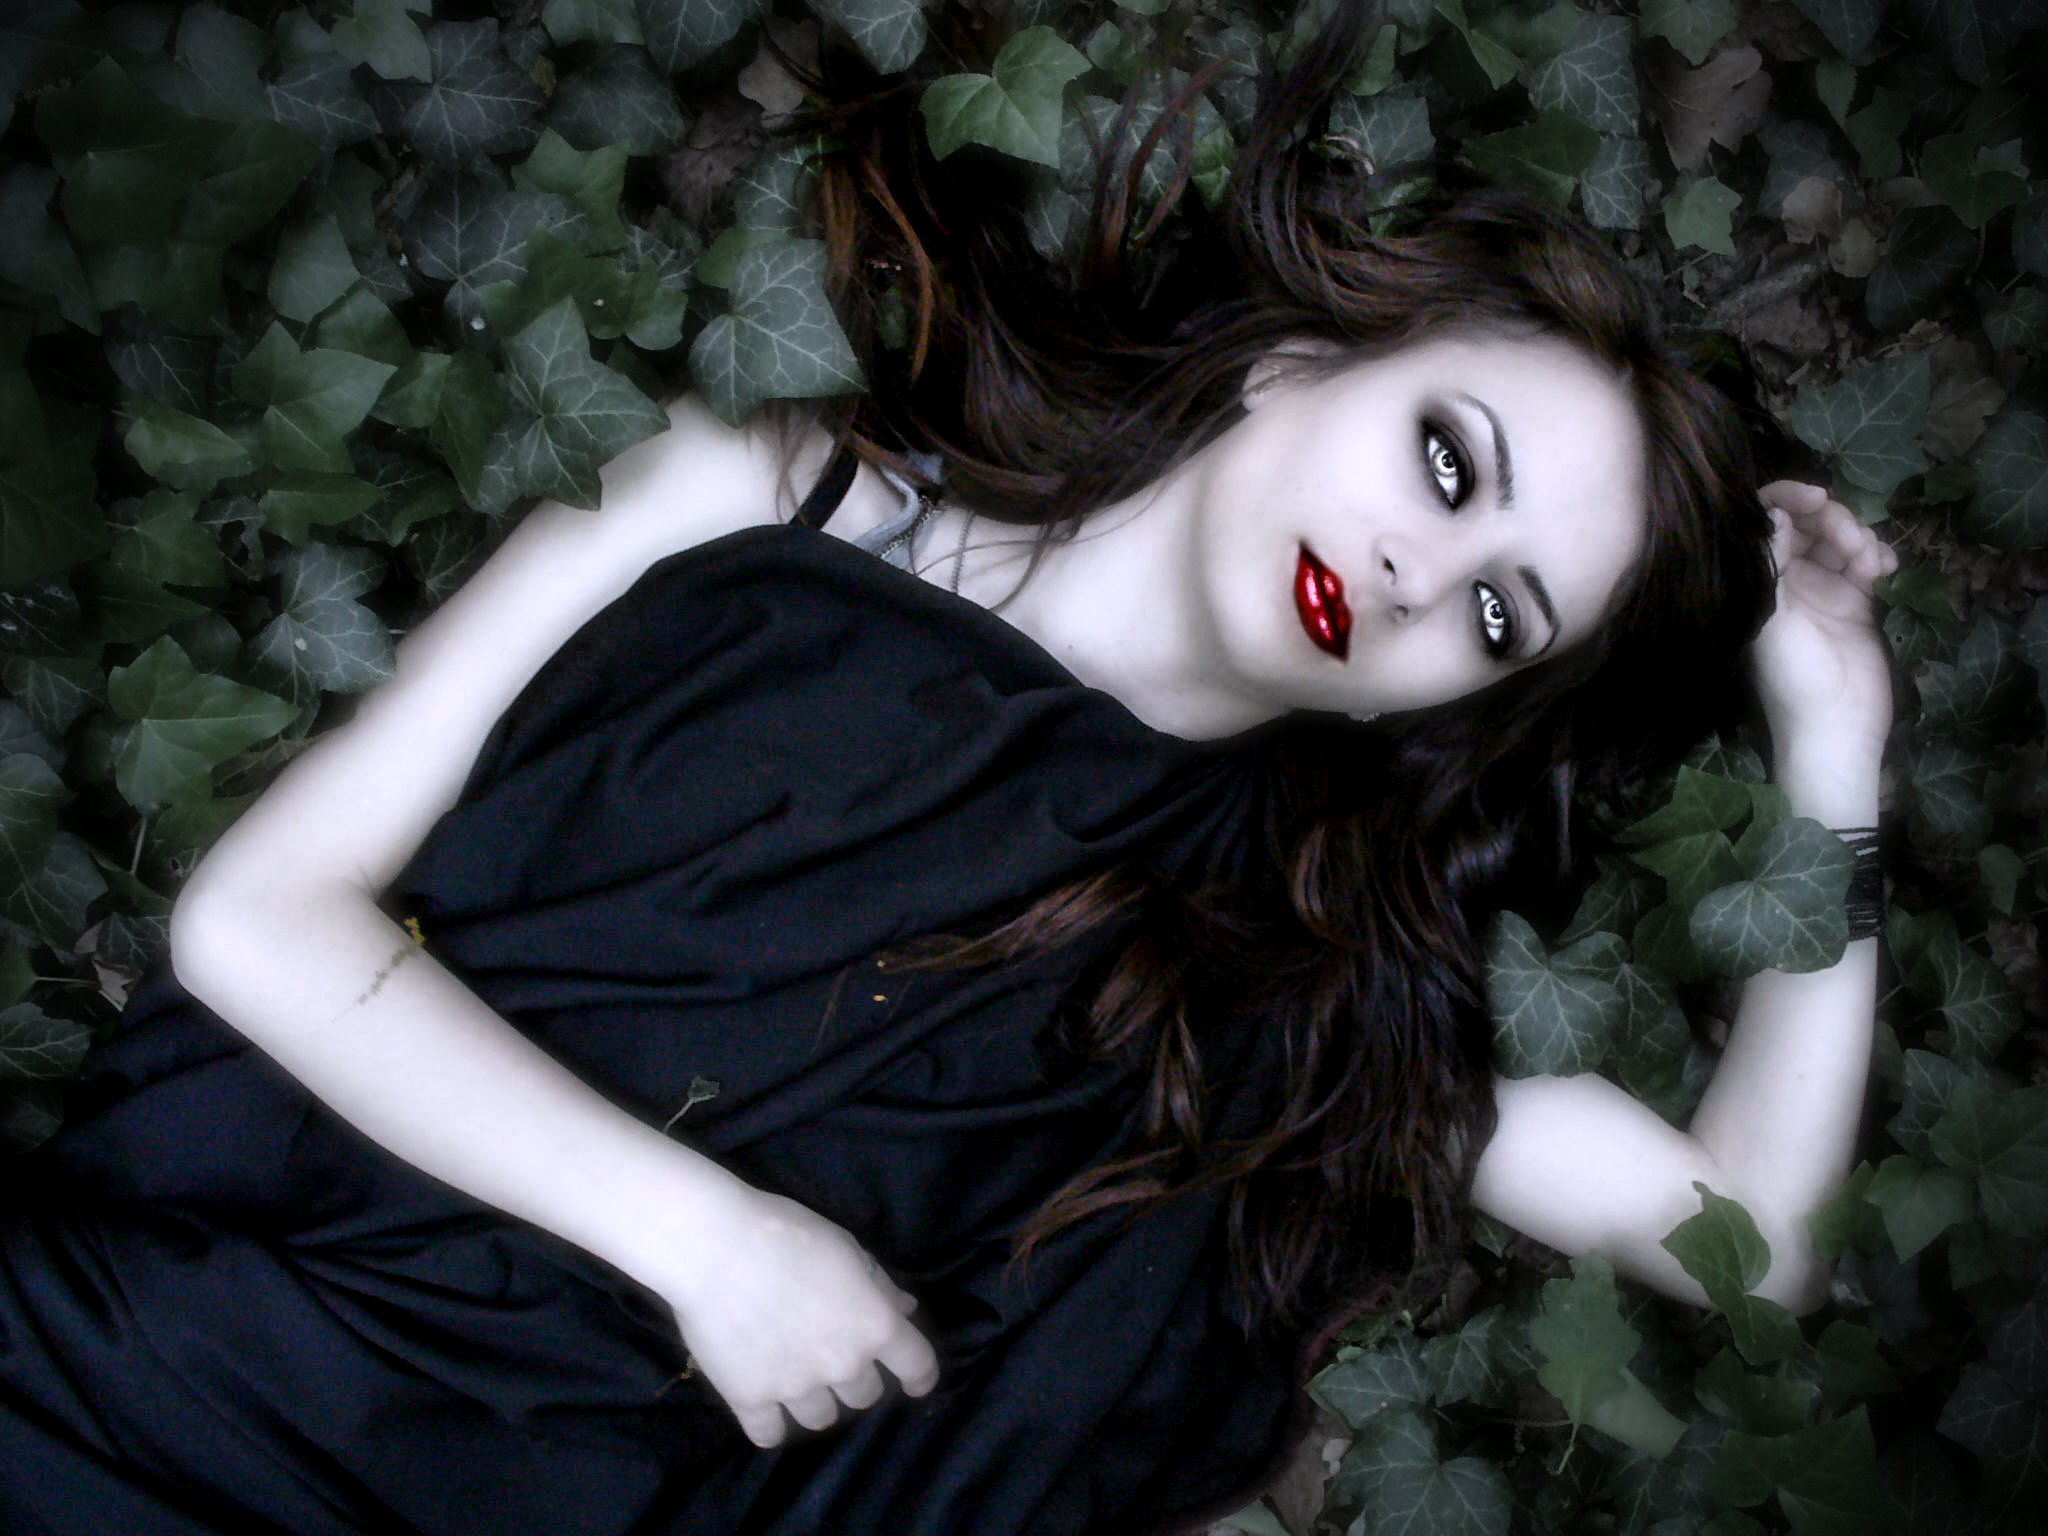 fond d'écran vampire,sous culture gothique,cheveux noirs,poupée,arbre,mode gothique